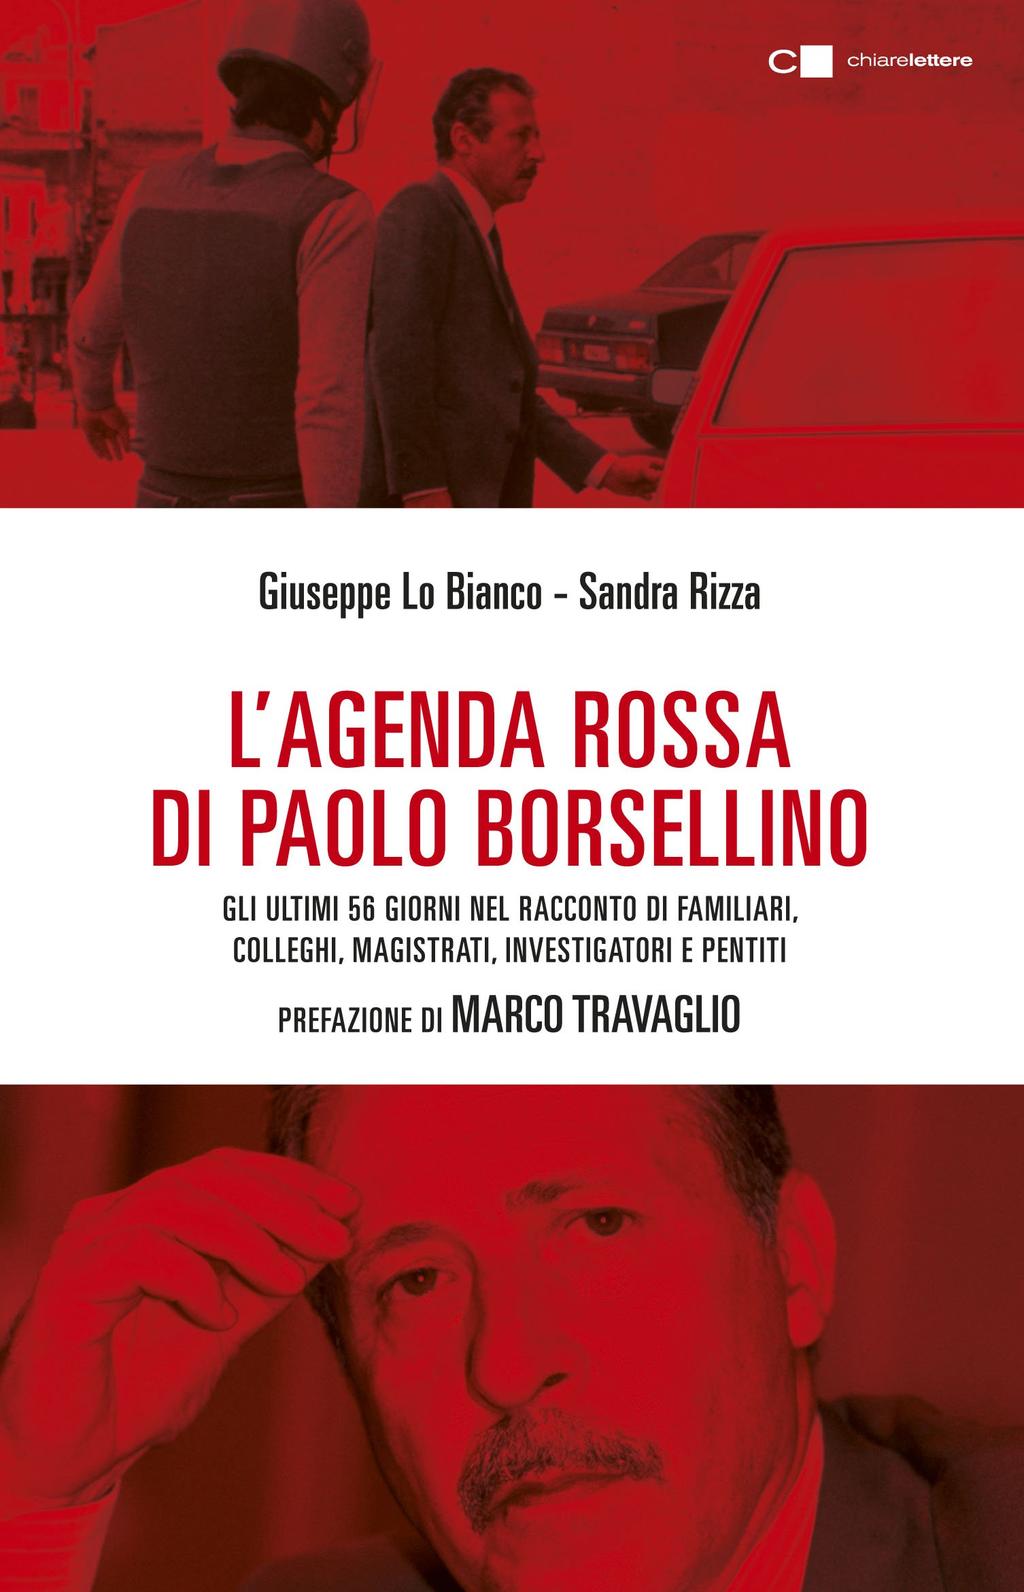 un tempo che sembra essersi fermato nell&# L'agenda rossa di Paolo Borsellino: Gli ultimi 56 giorni nel racconto di familiari, colleghi, magistrati, investigatori e pentiti «Questo non è soltanto un